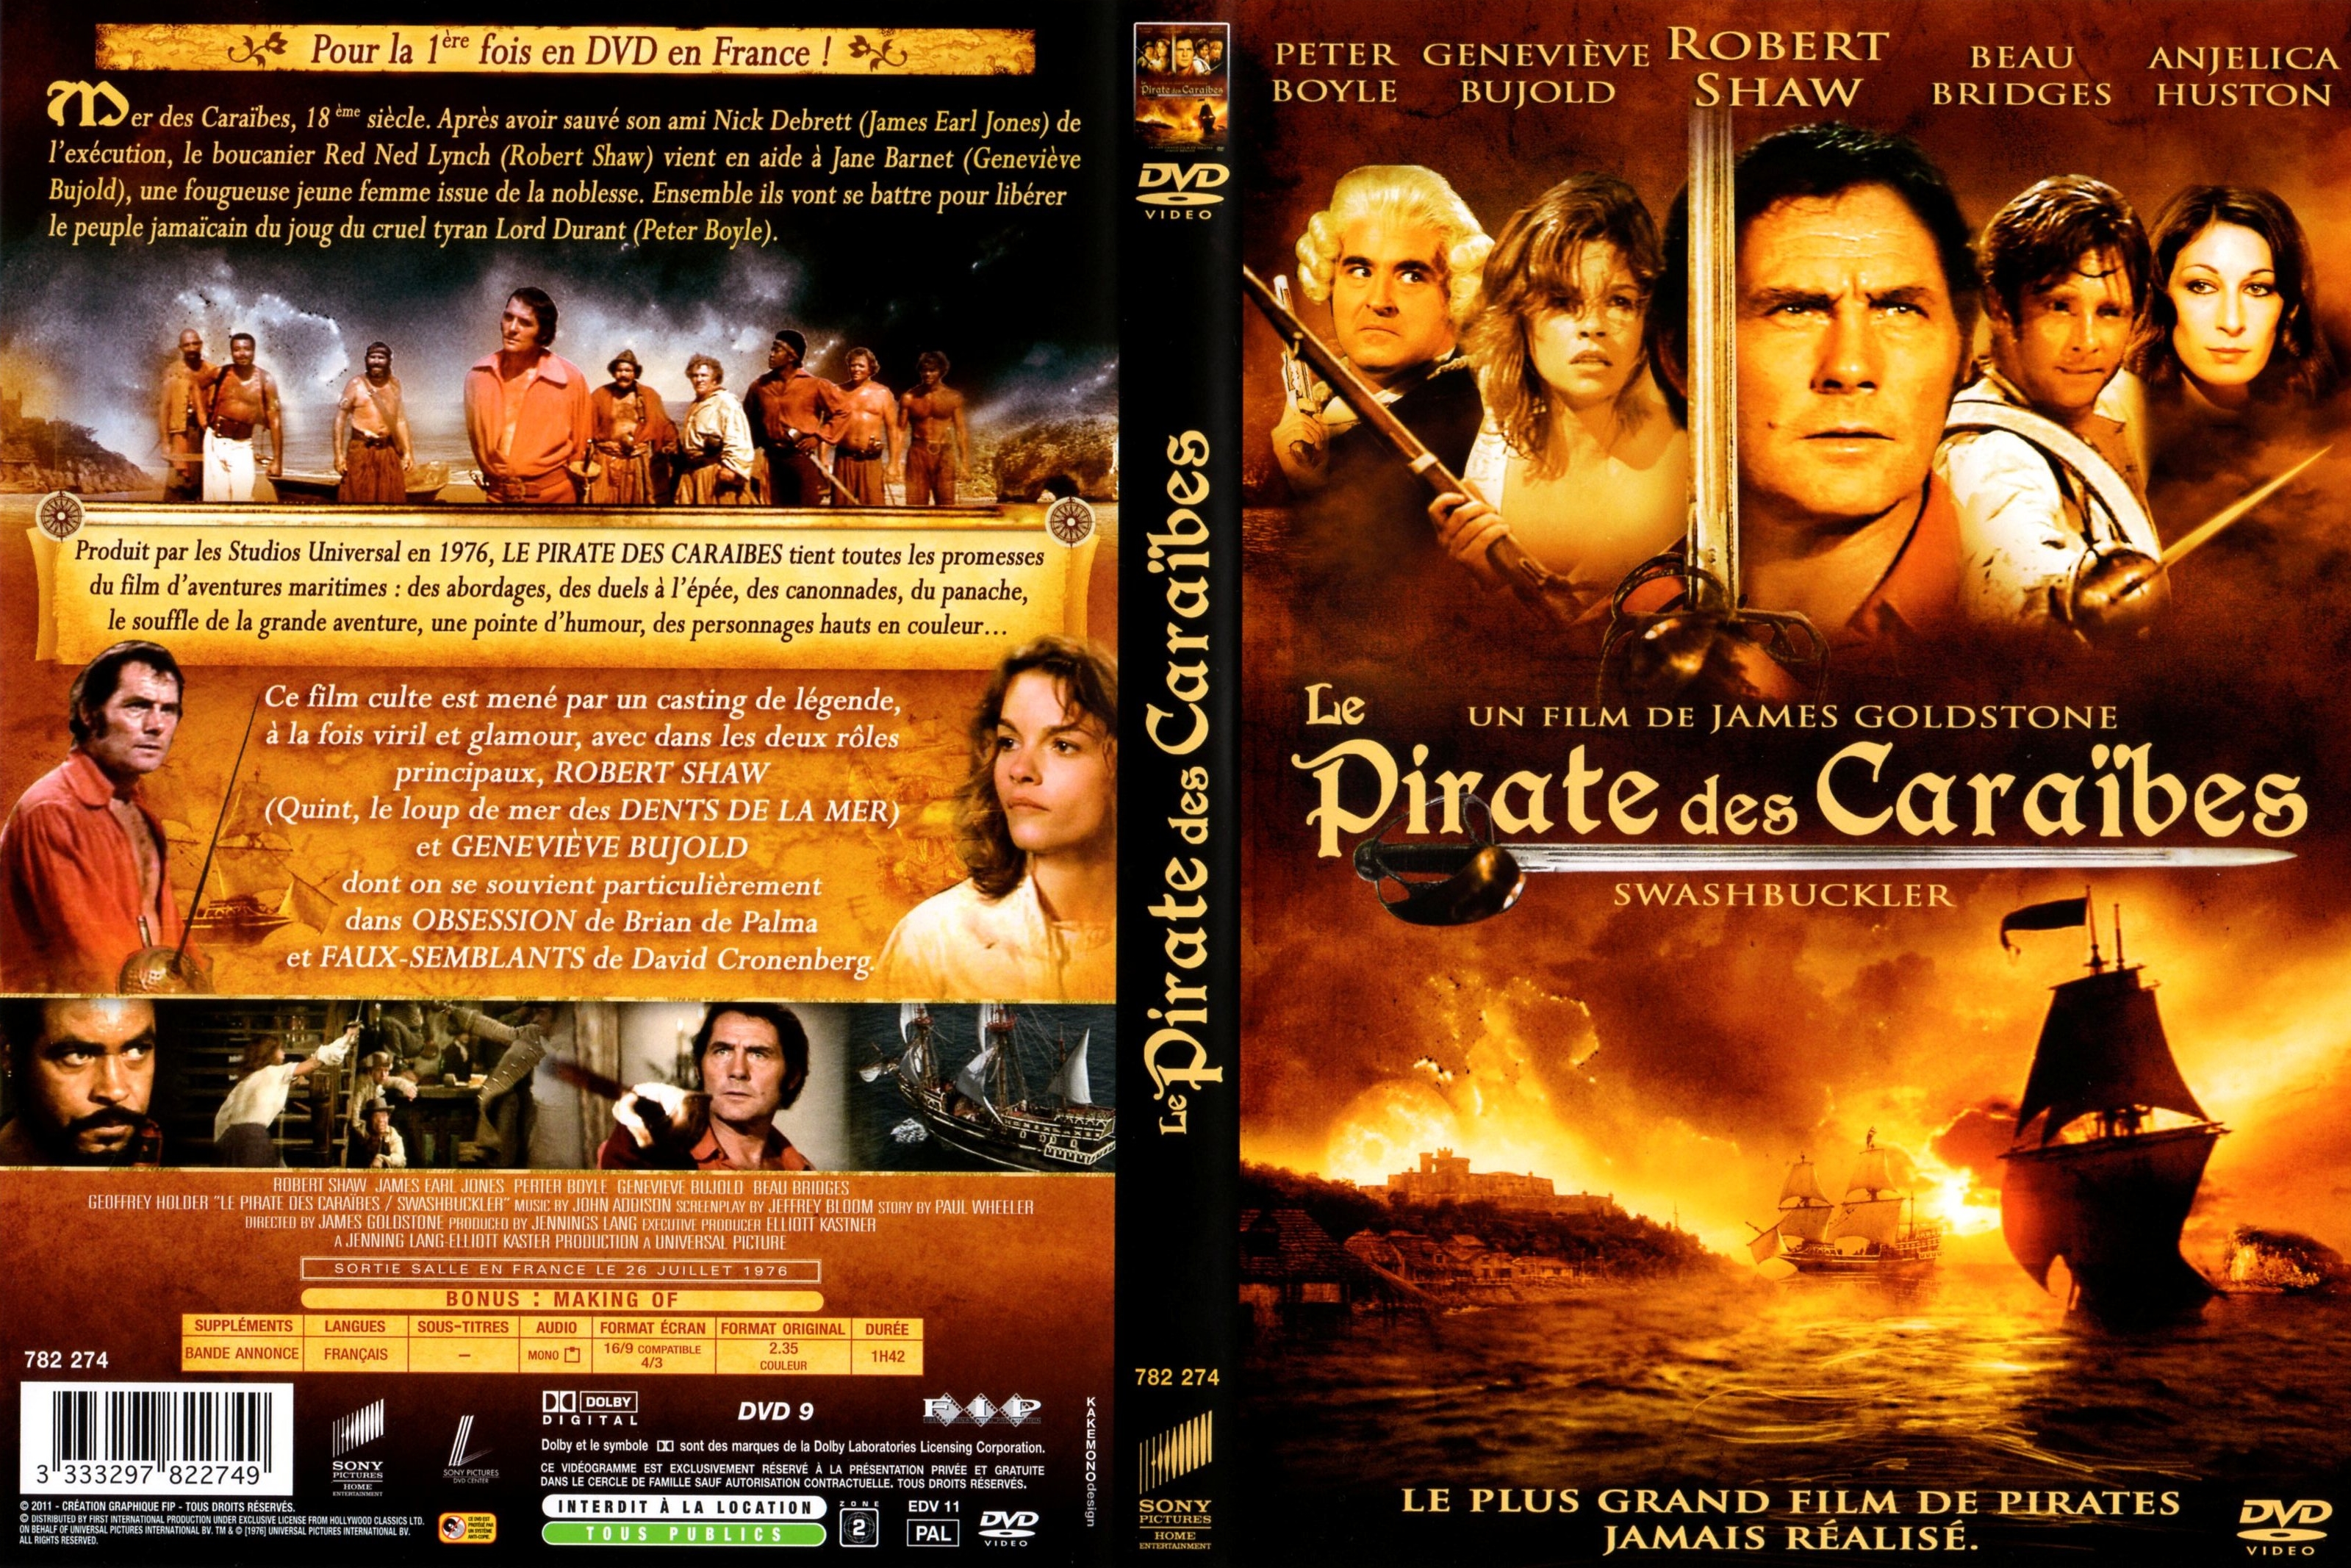 Jaquette DVD Le pirate des caraibes